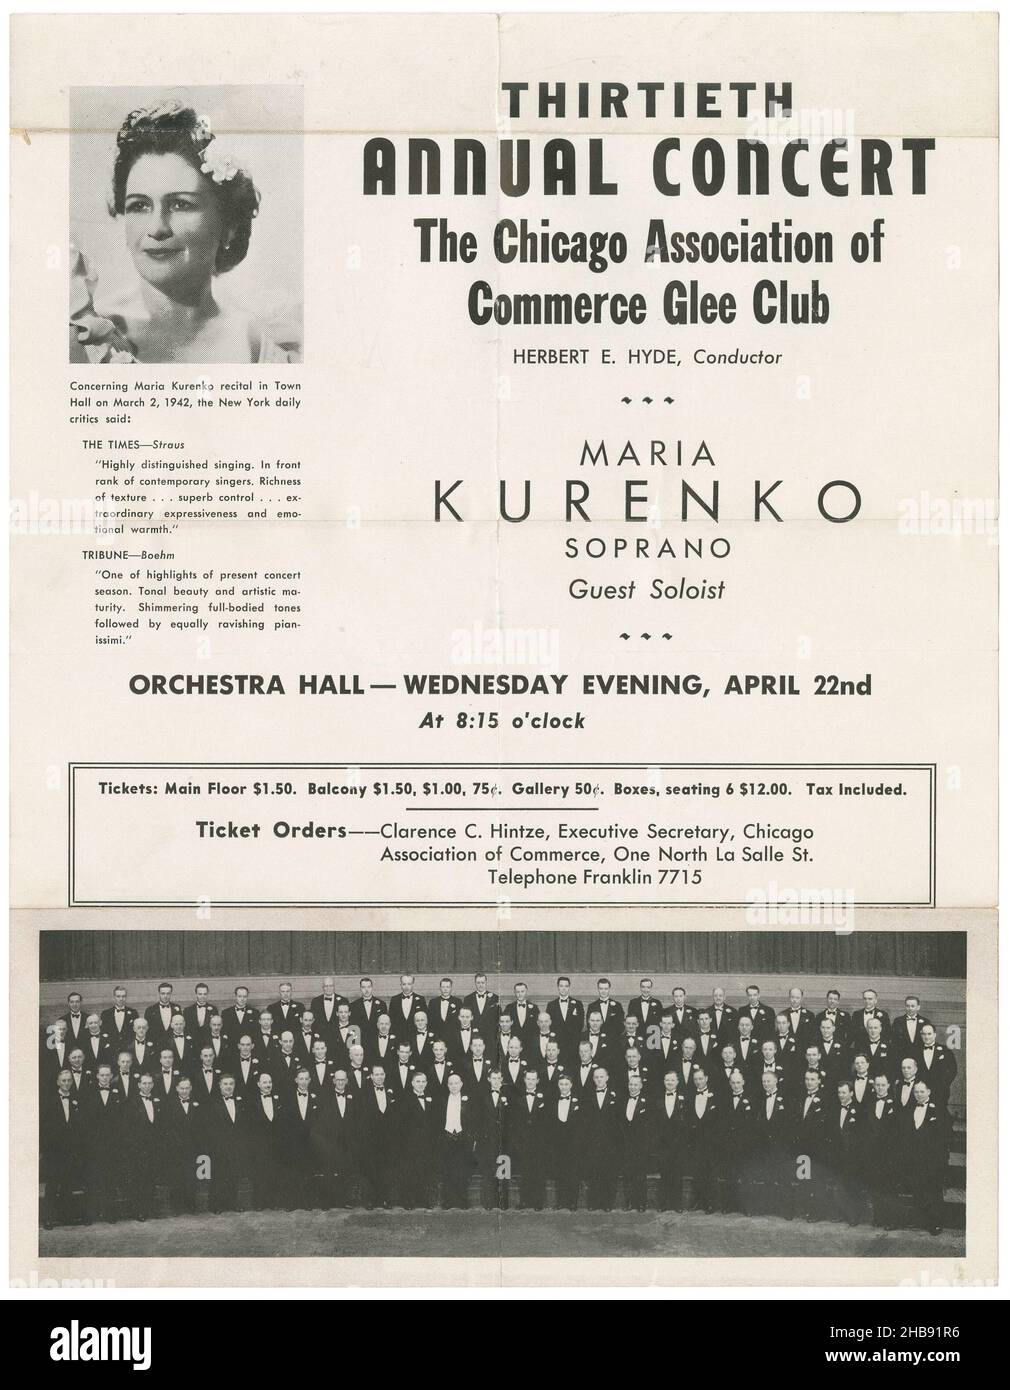 Volantino del concerto annuale 13th della Chicago Association of Commerce Glee Club, con Maria Kurenko, Soprano, presso l'Orchestra Hall. Herbert E. Hyde, direttore. Aprile 22, 1942. Foto Stock